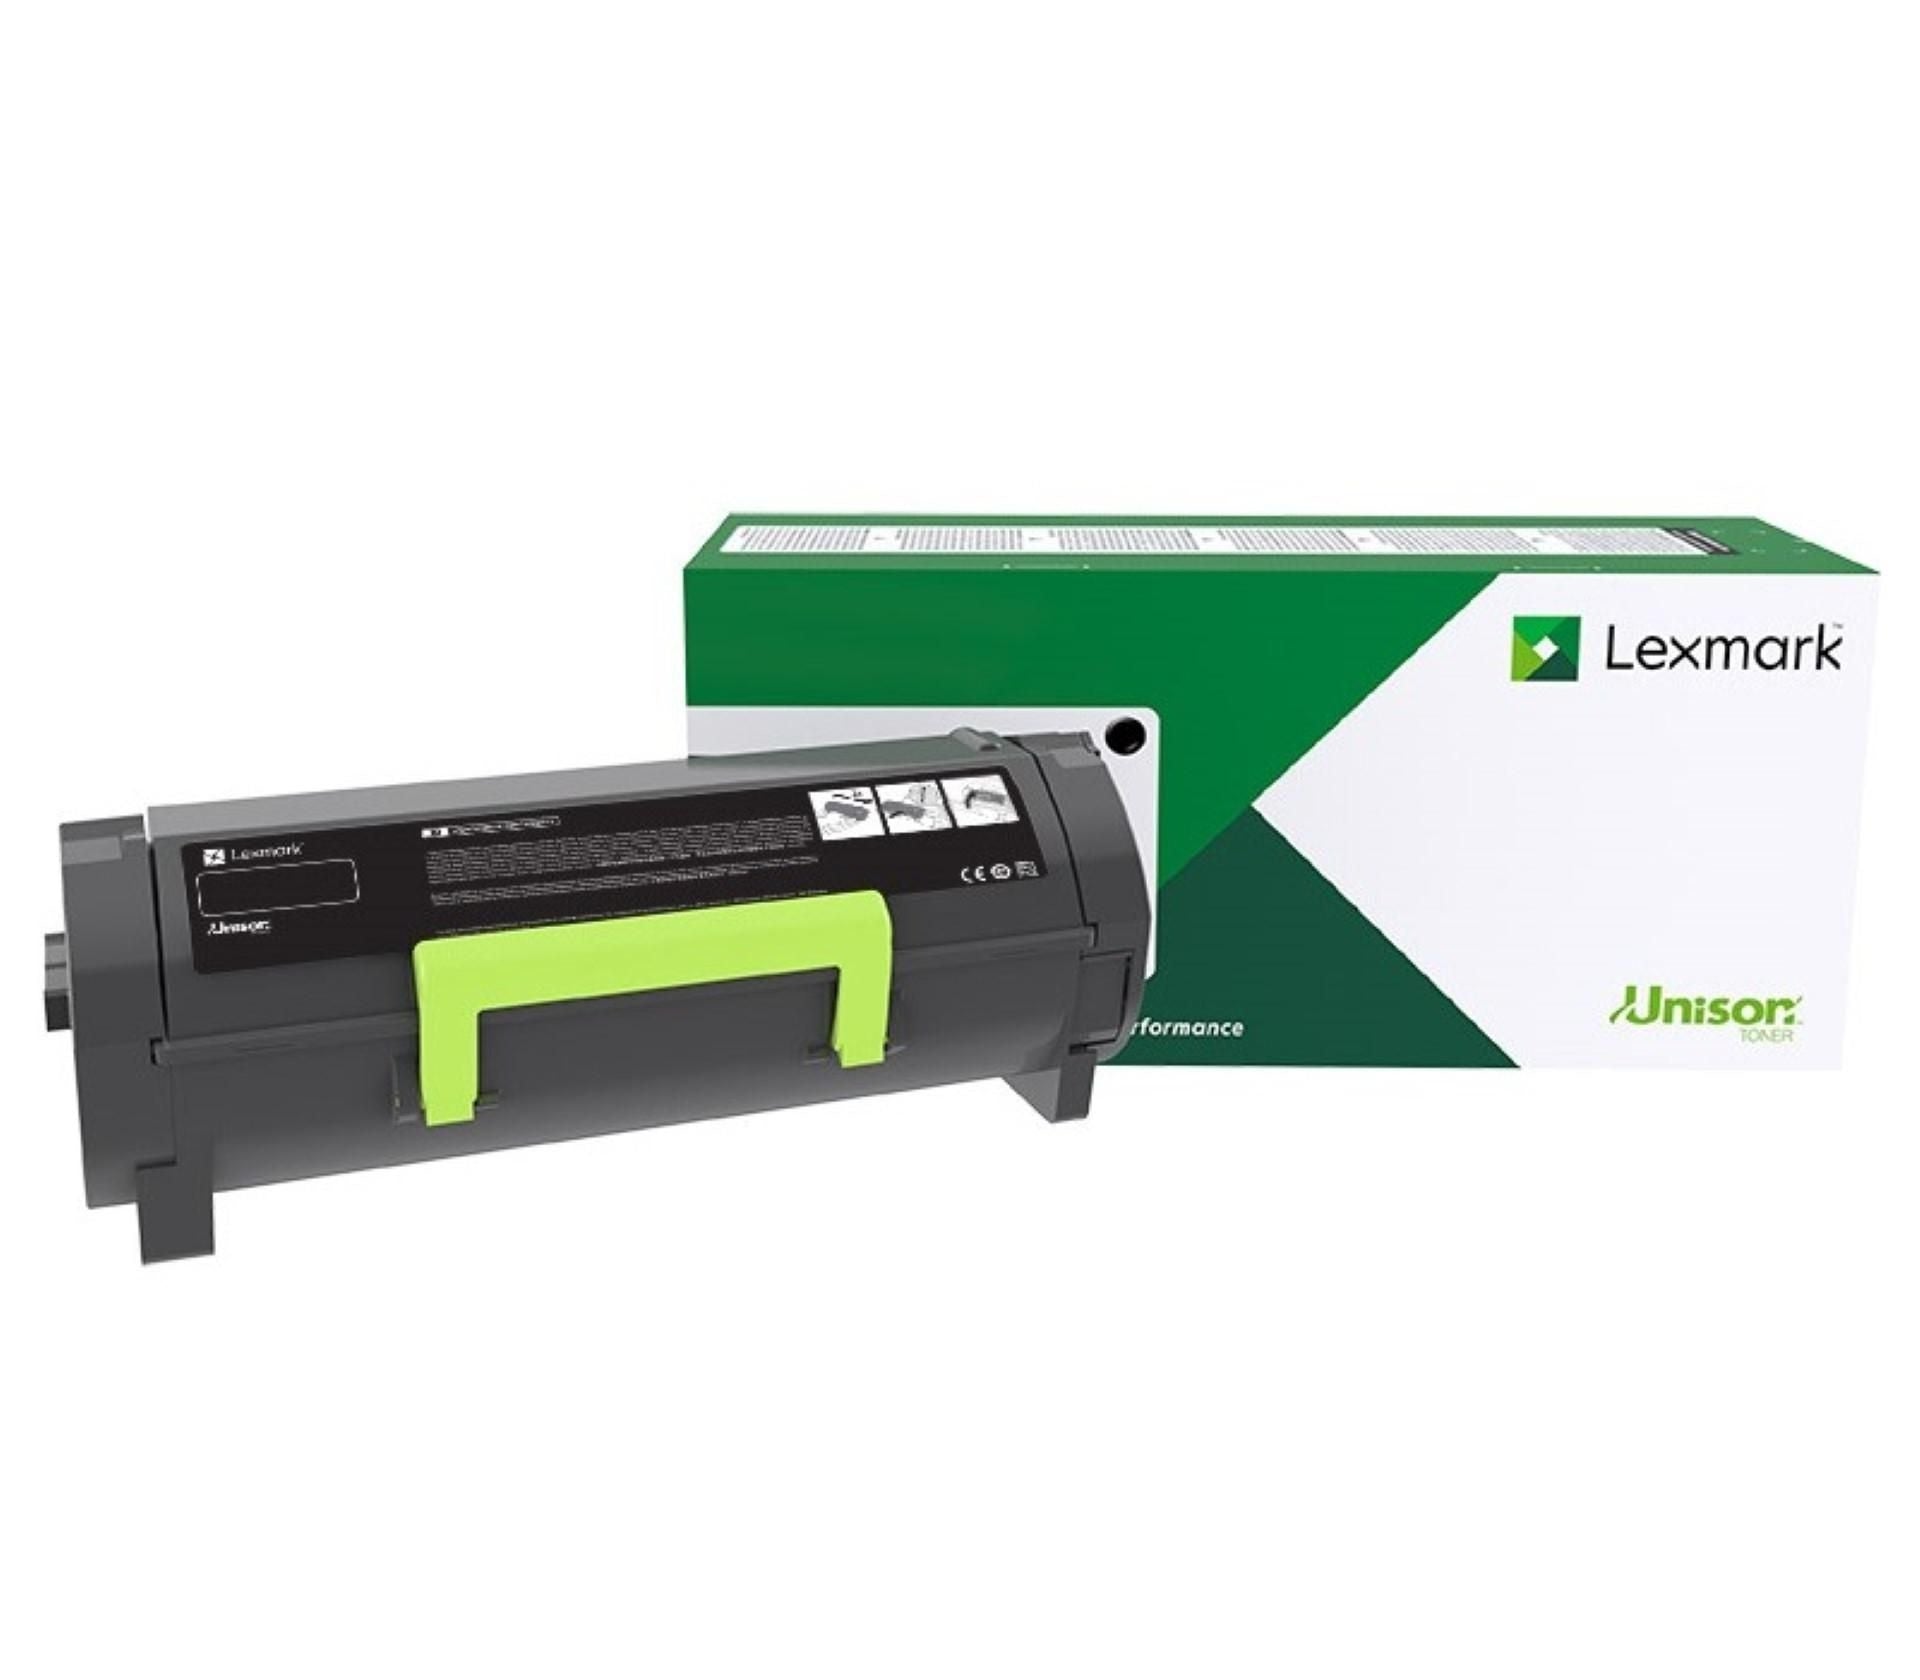 Toner Laser Lexmark/ Color Cian Rendimiento Estandar C2340C0 / Hasta 1,000 Paginas / 5 % De Cobertura / P/Mod. C2535Dw , Mc2535Adwe